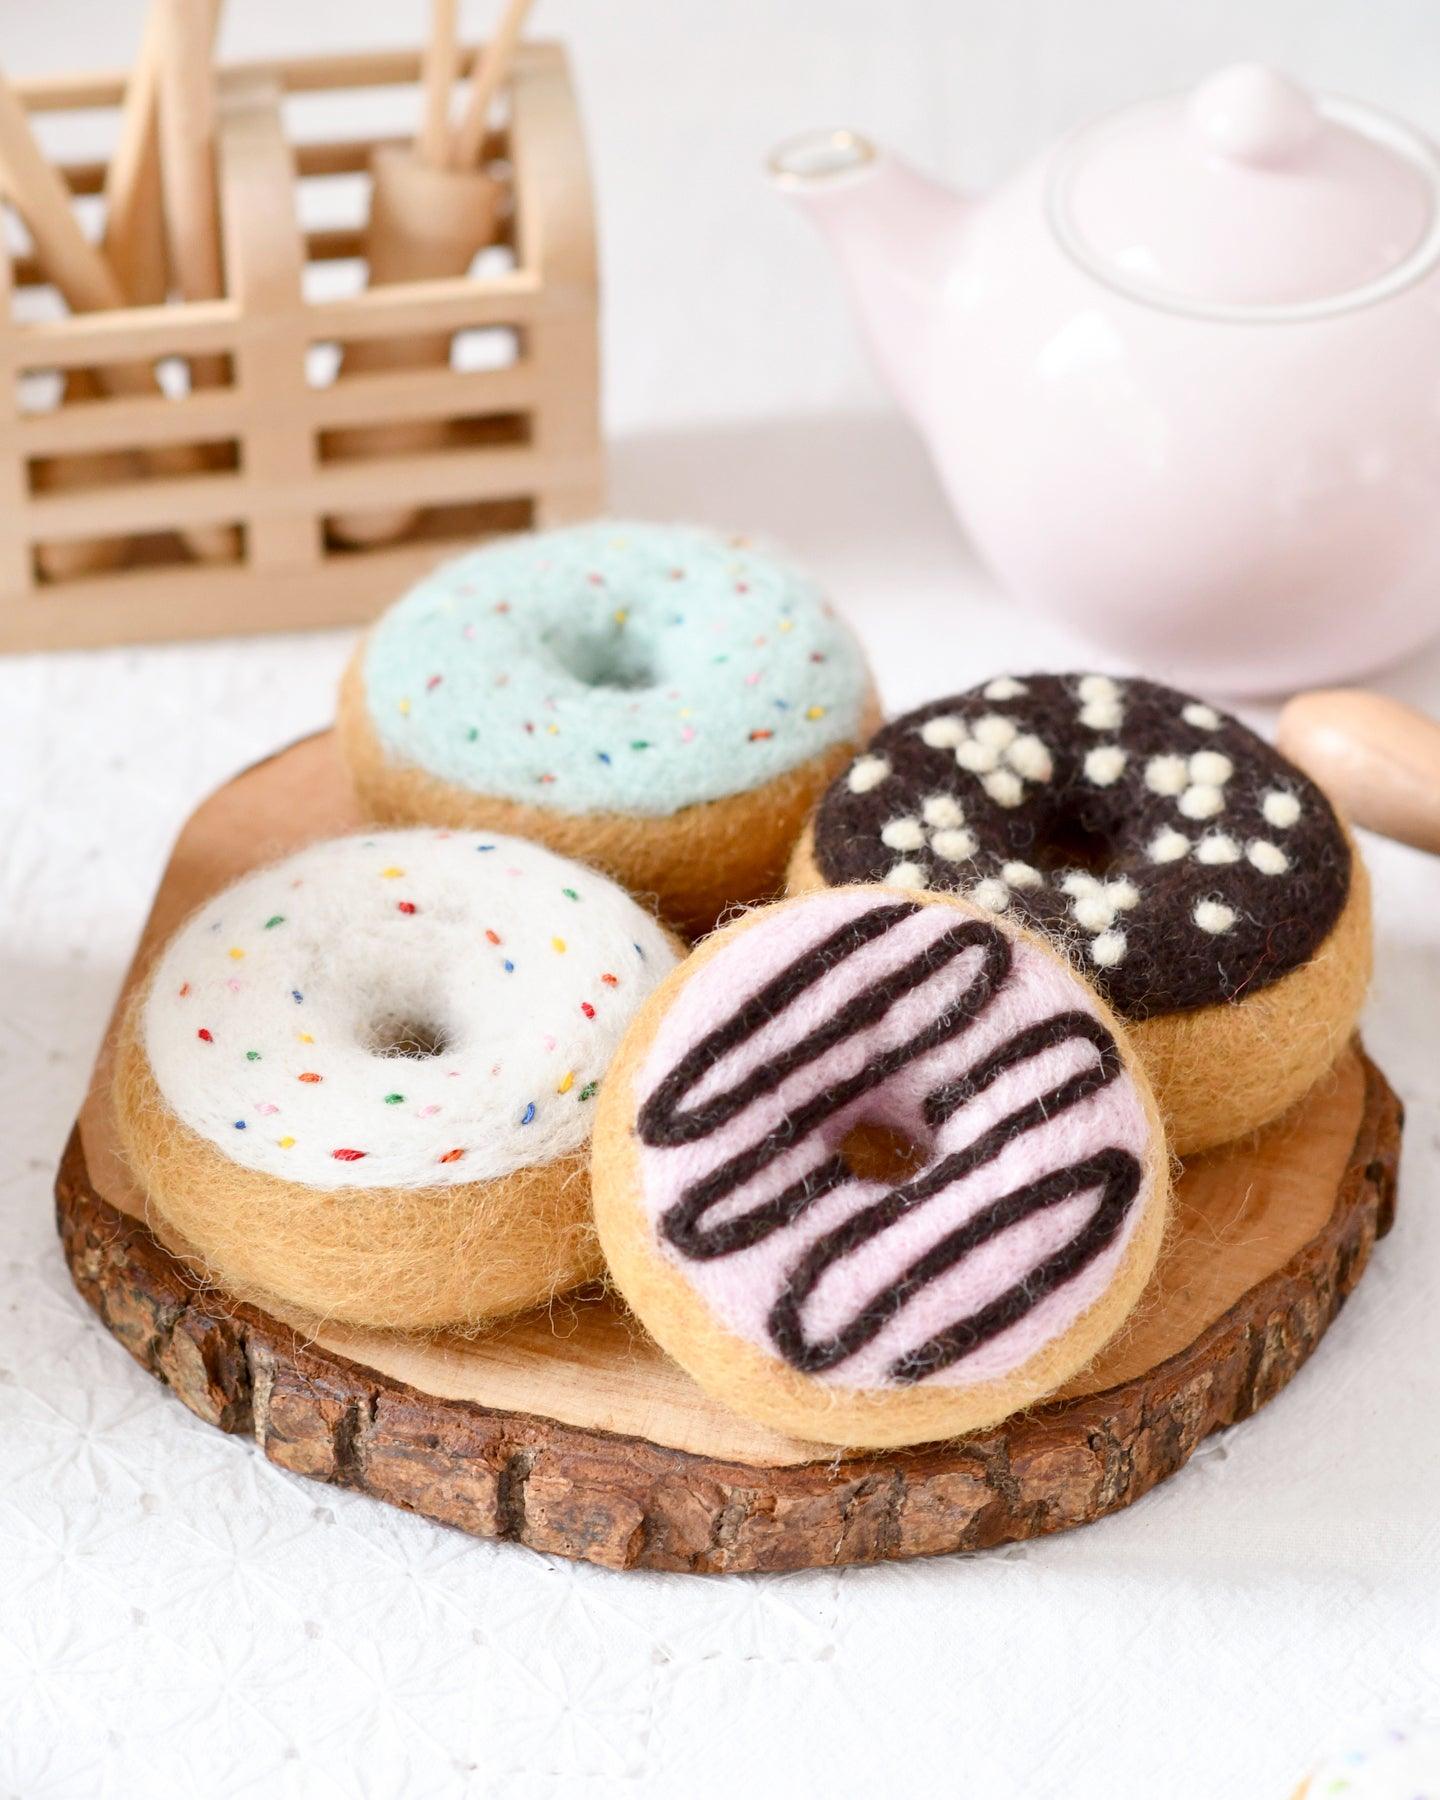 Felt Doughnut (Donut) with Classic Glaze and Rainbow Sprinkles - Tara Treasures